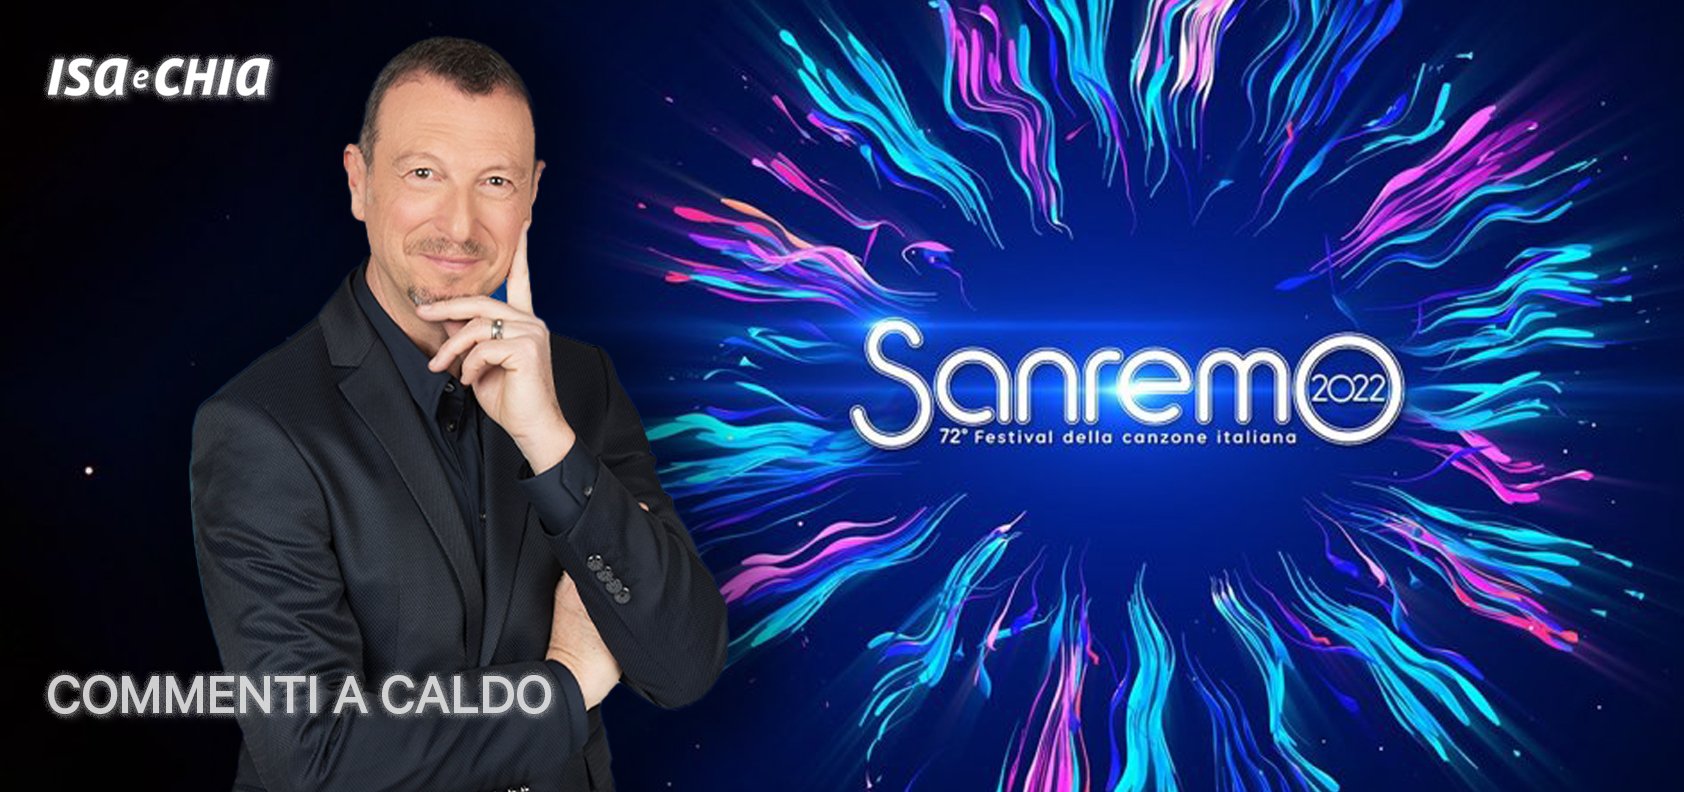 Sanremo 2022, la prima serata: commenti a caldo